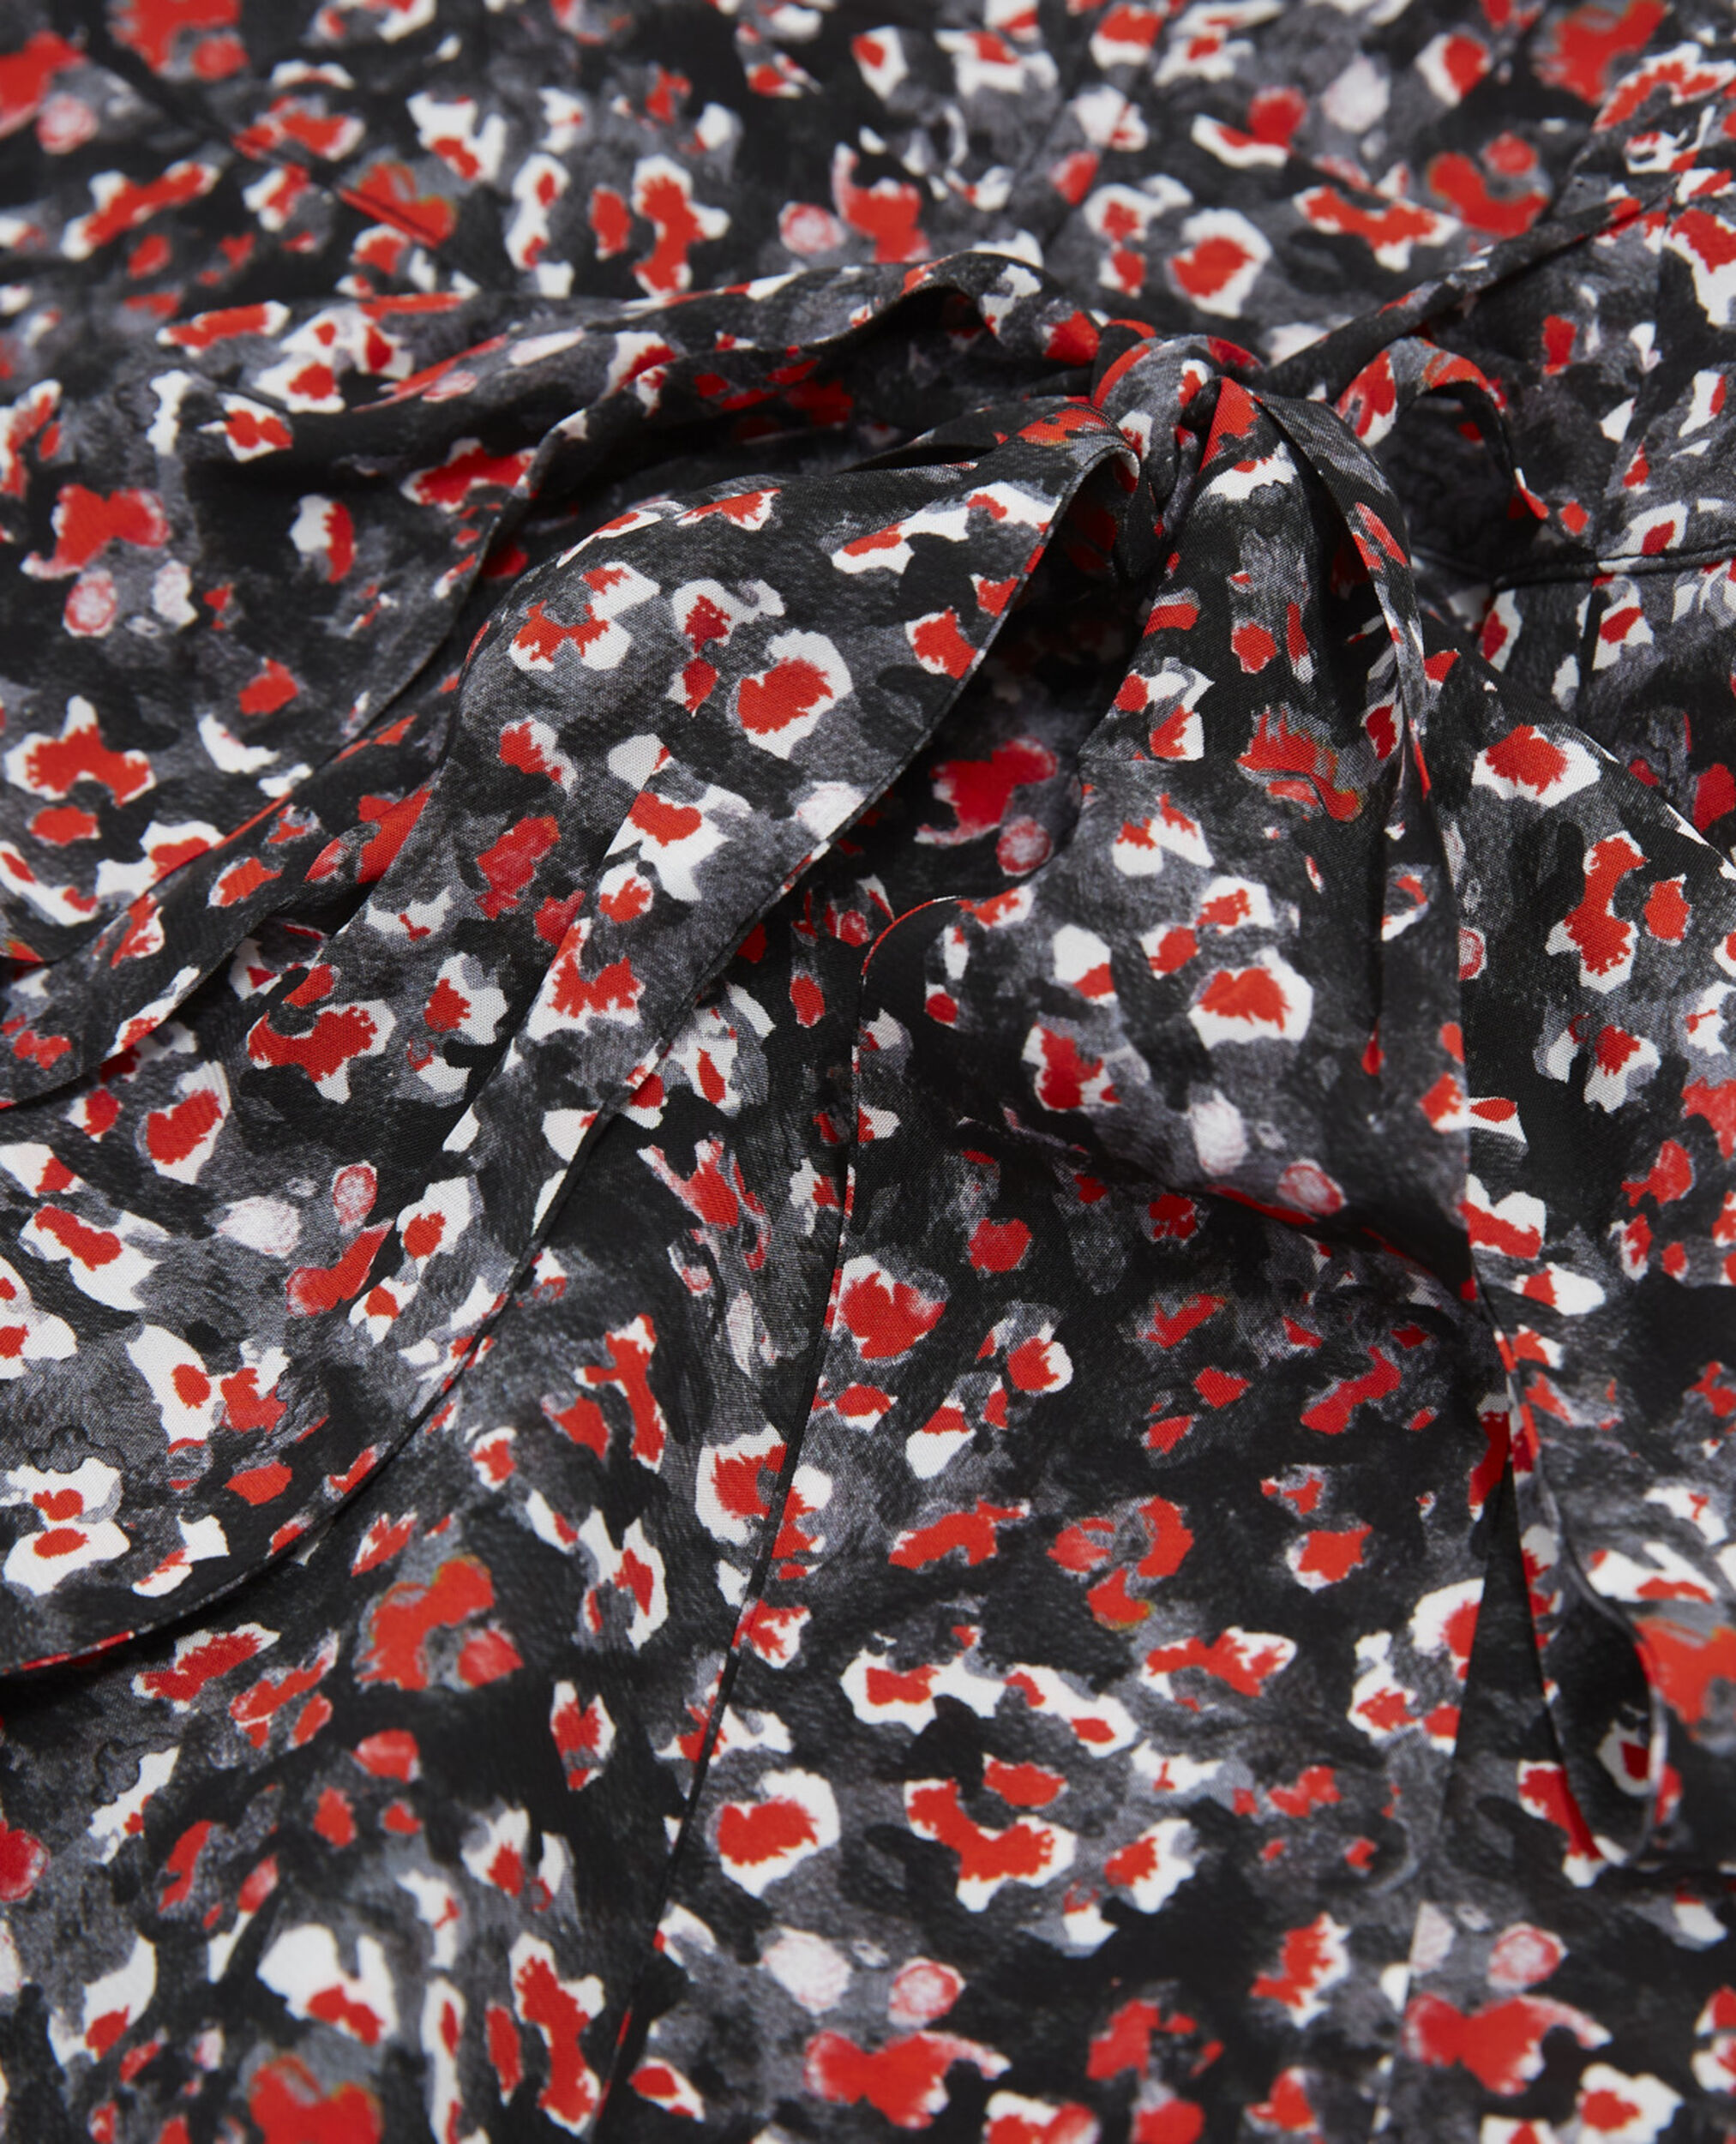 Short floral dress, BLACK - RED, hi-res image number null